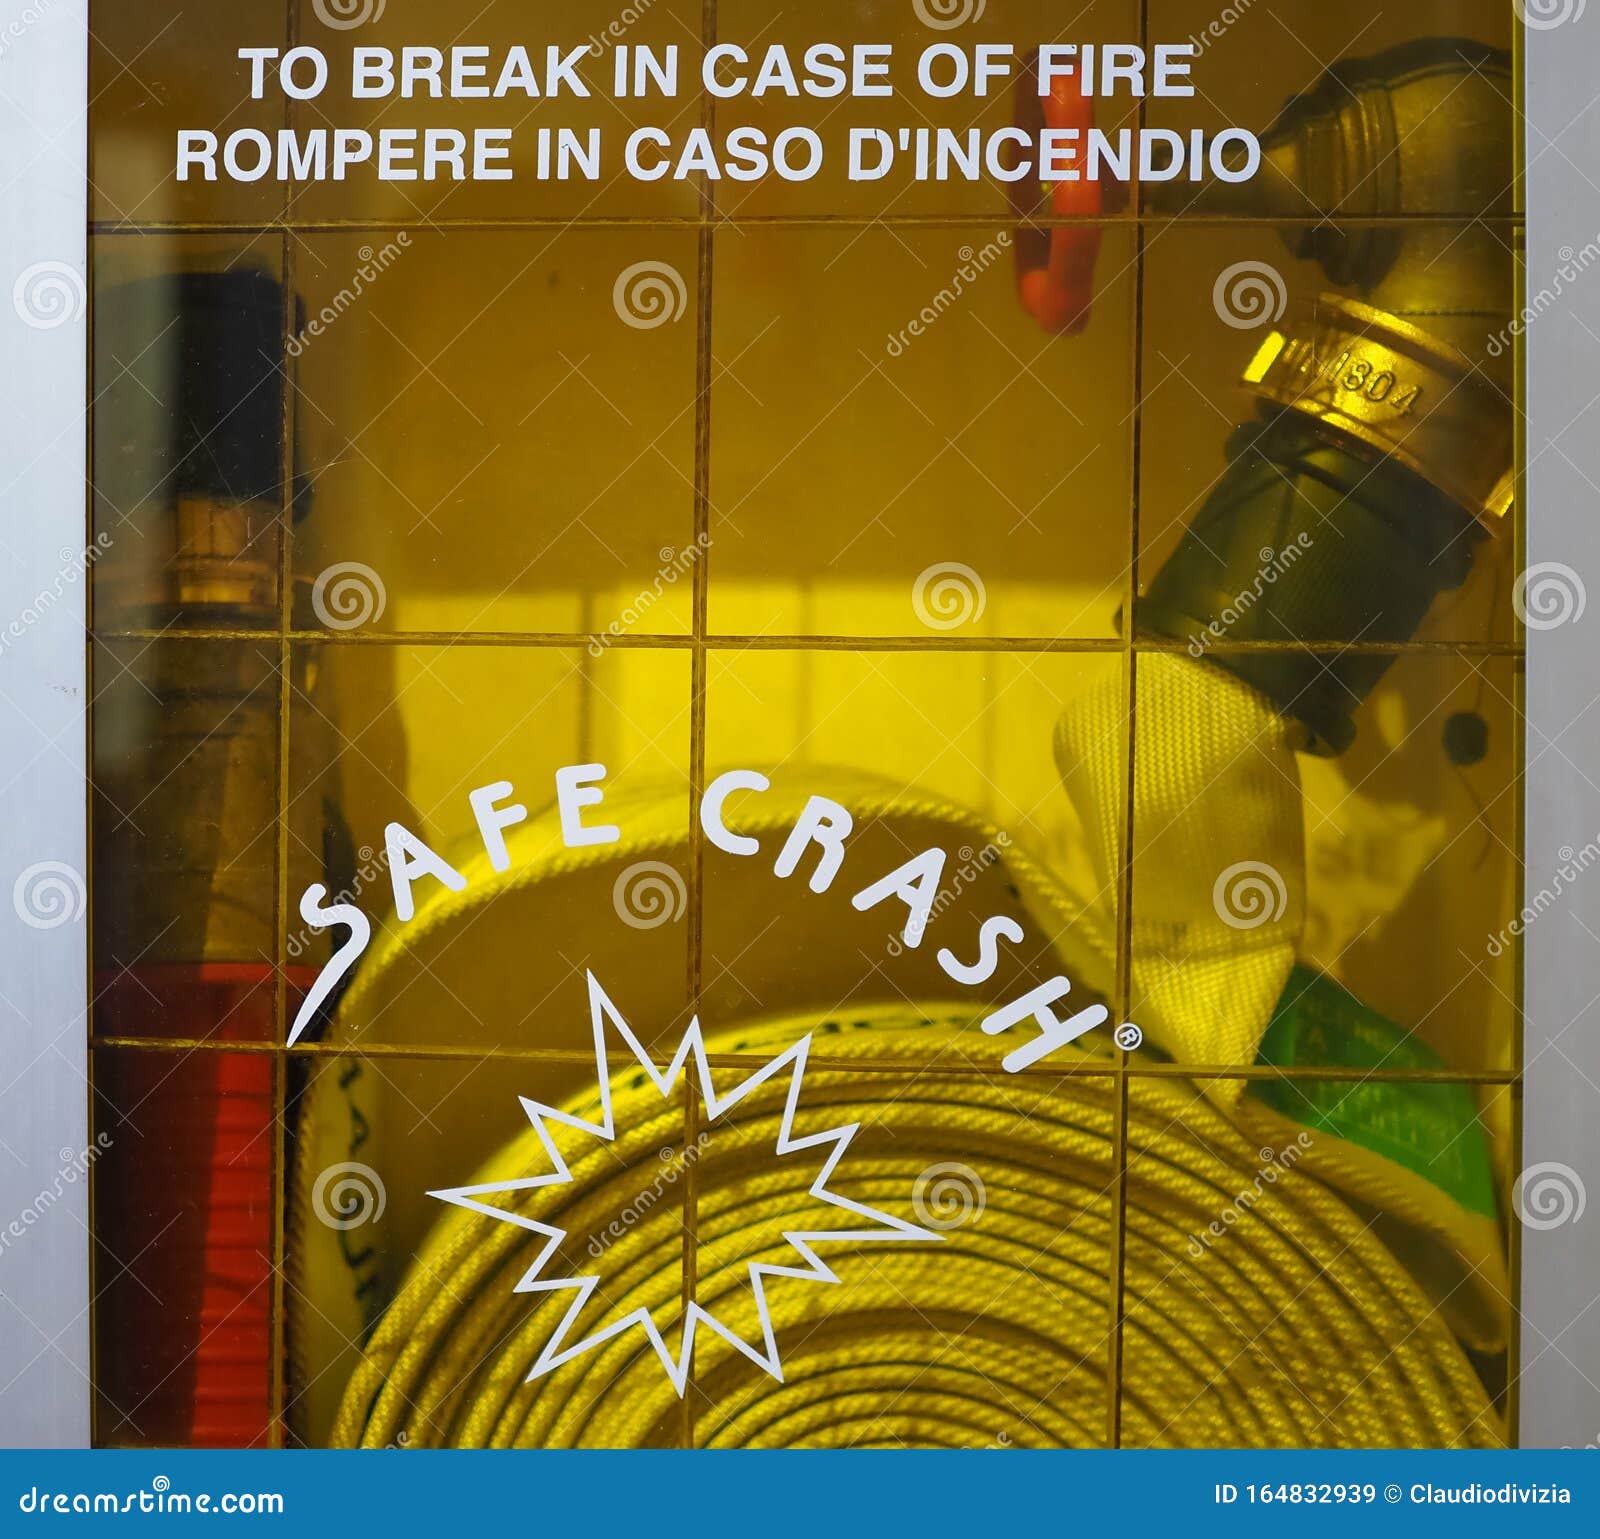 safe crash fire hose cabinet